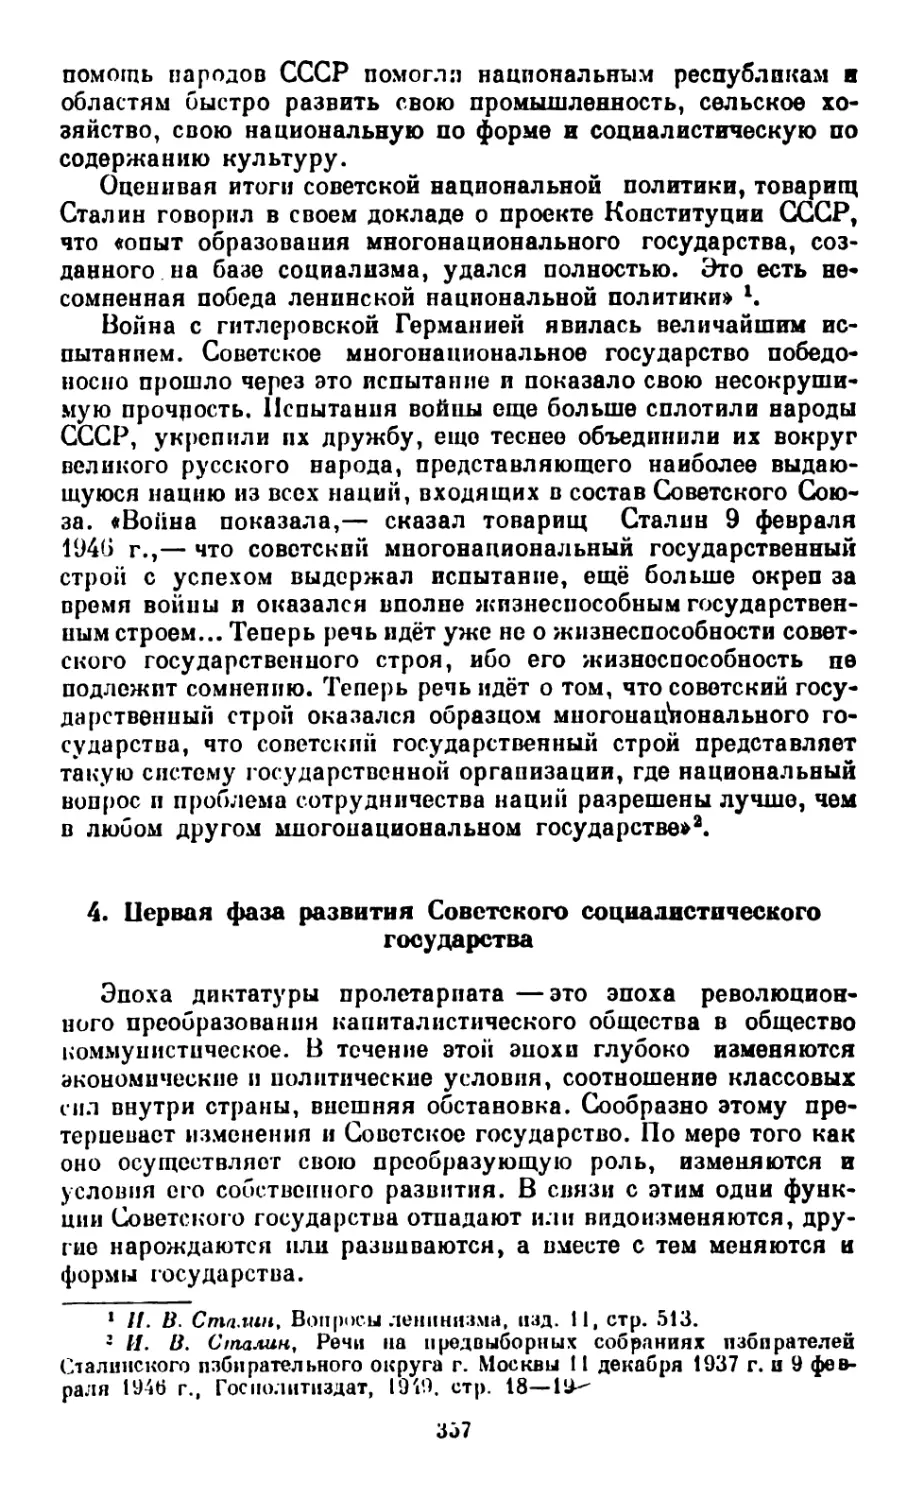 4. Первая фаза развития Советского социалистического государства